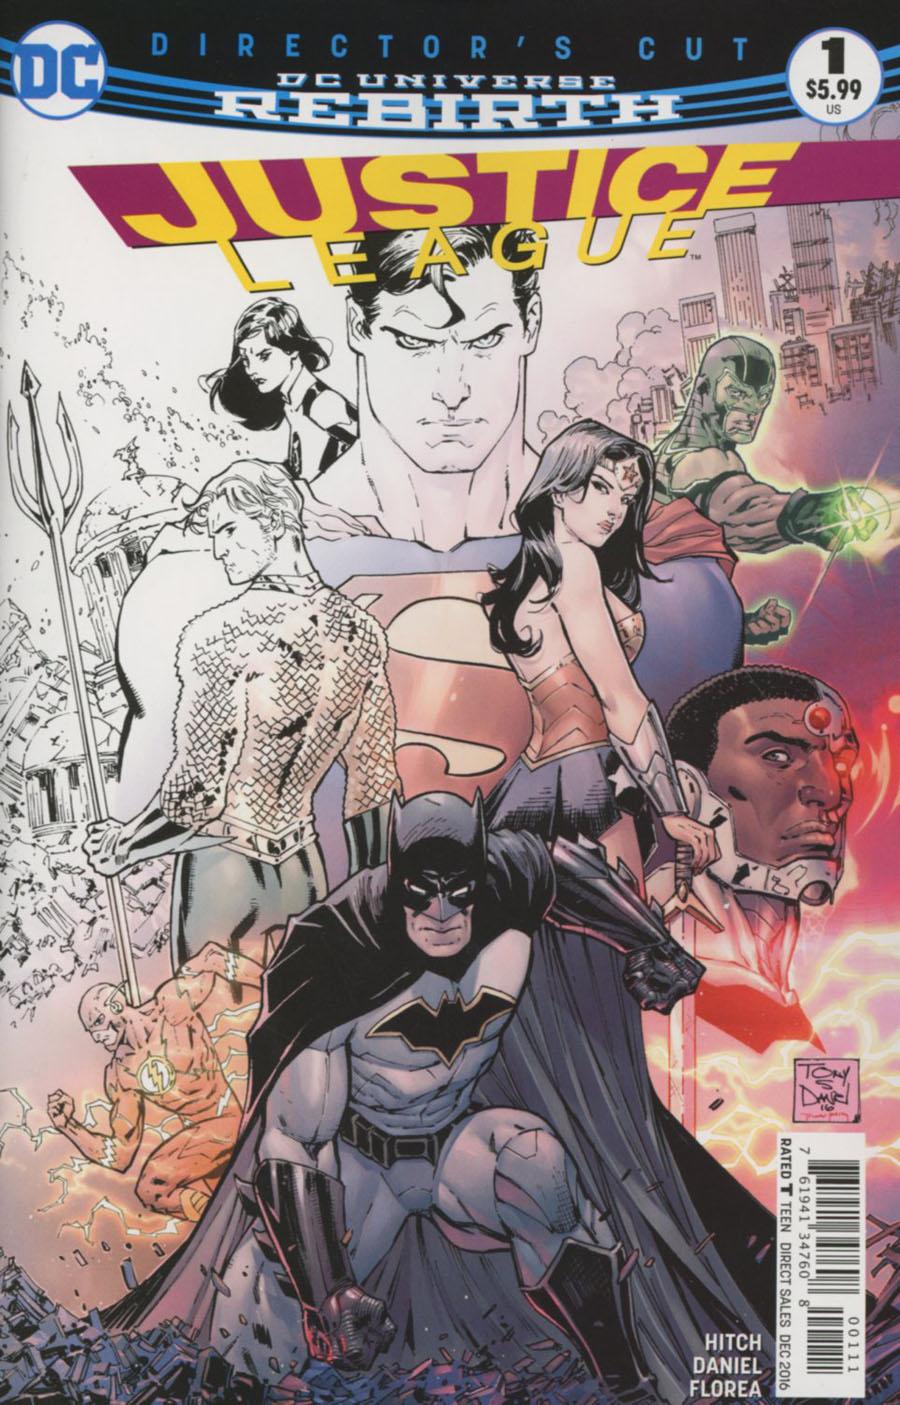 Justice League Directors Cut Vol. 3 #1